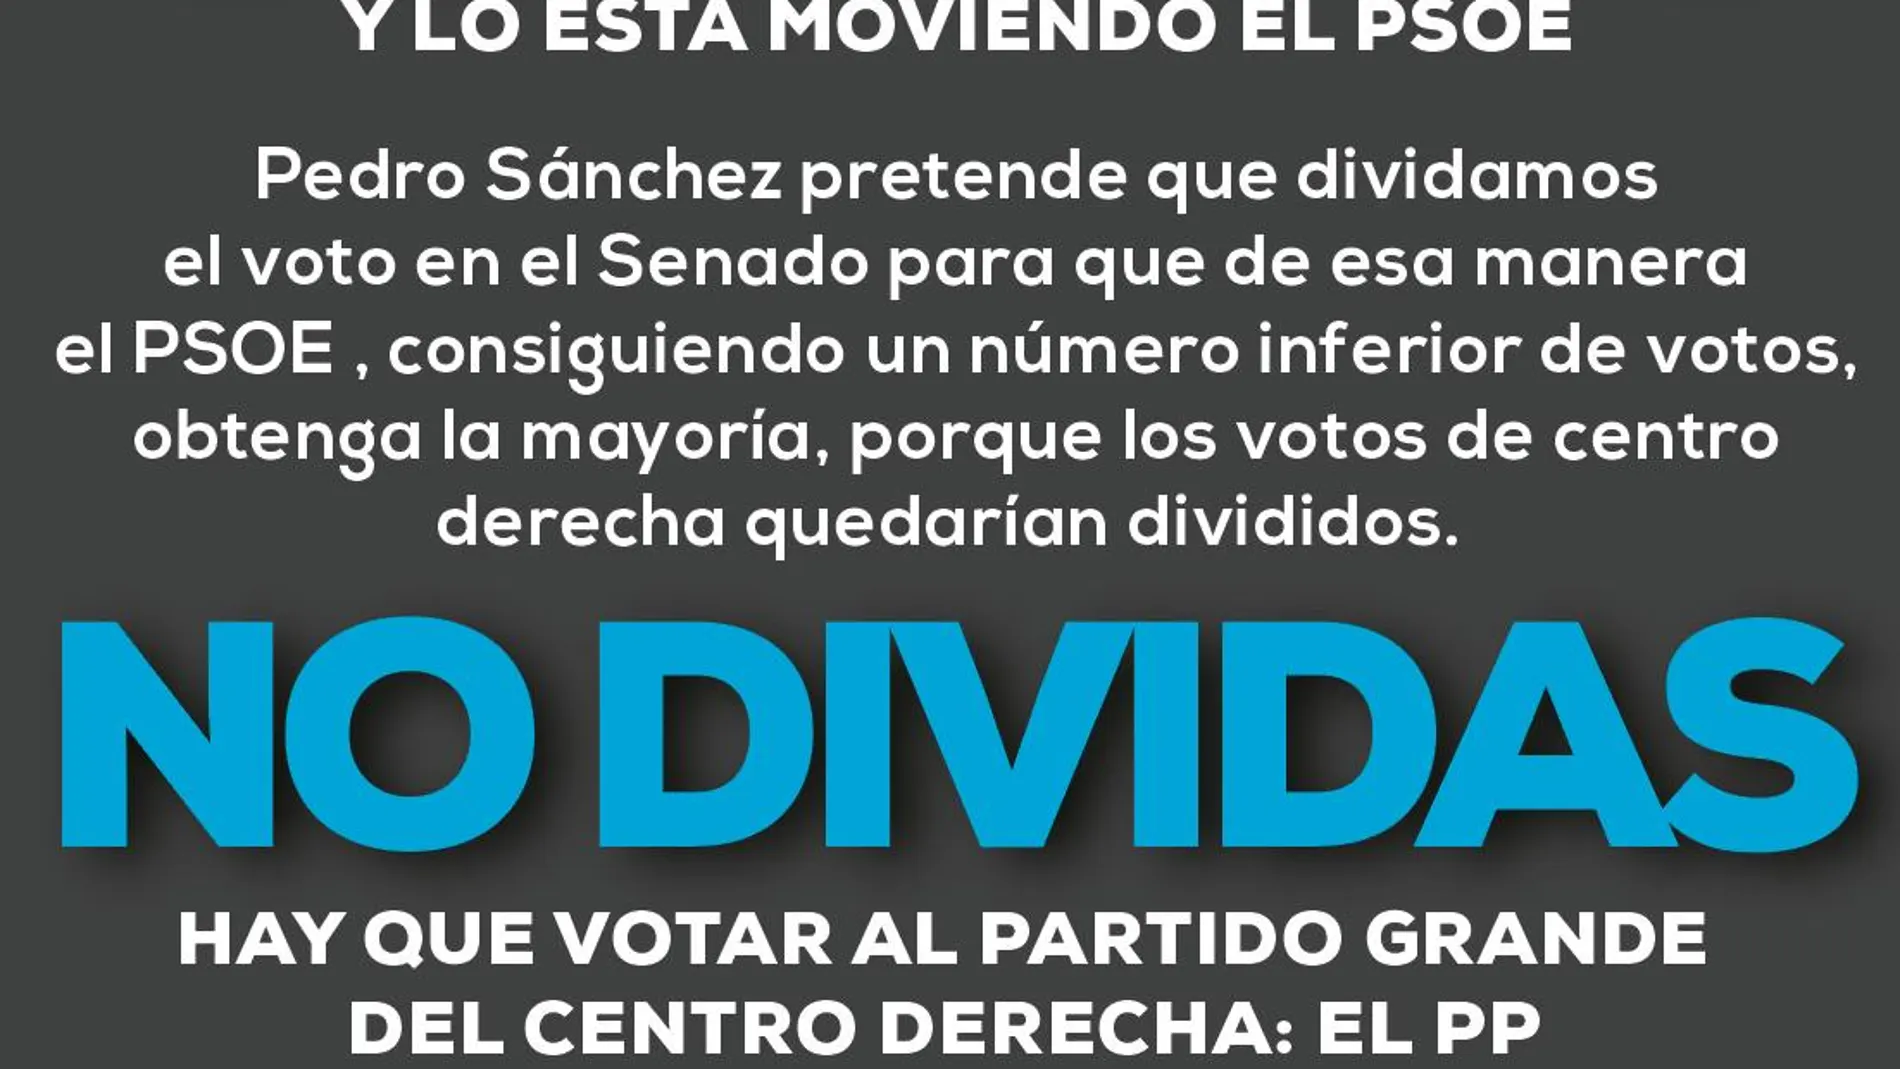 El bulo con el que el PSOE pretende lograr mayoría absoluta en el Senado